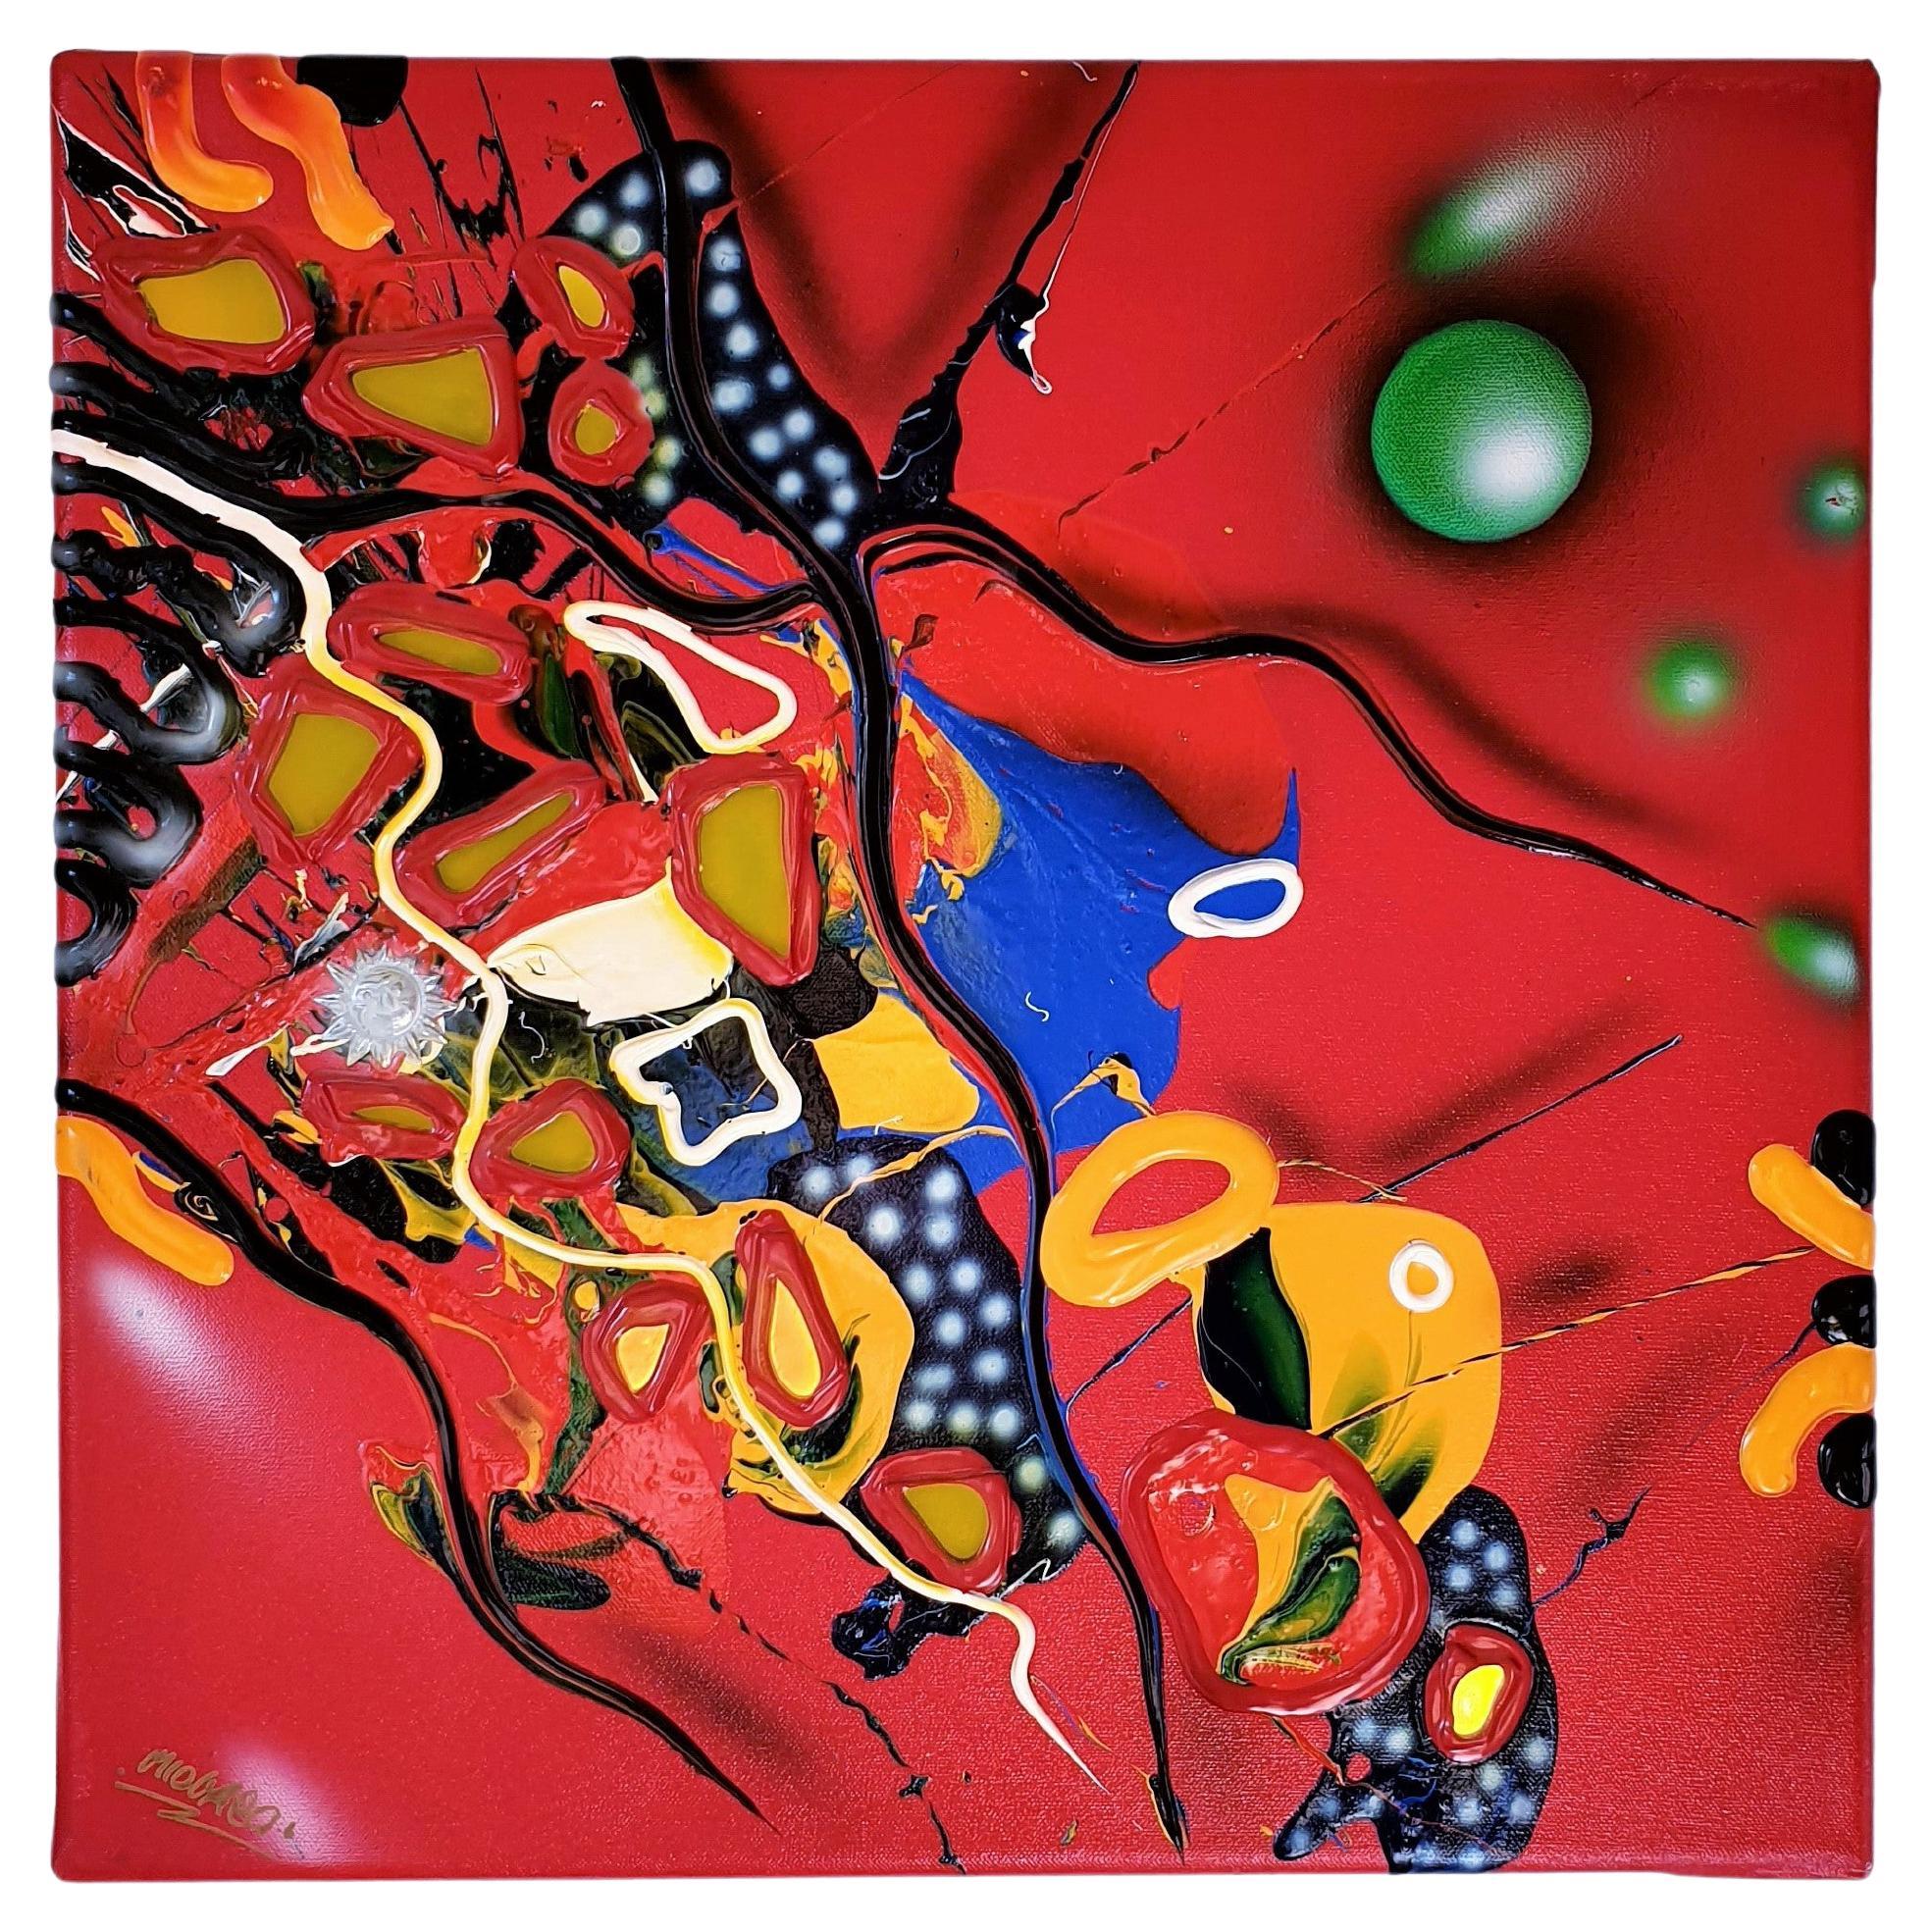 1996 Atelier Micmac von Bea Schröder, piktografische abstrakte Malerei in Rot